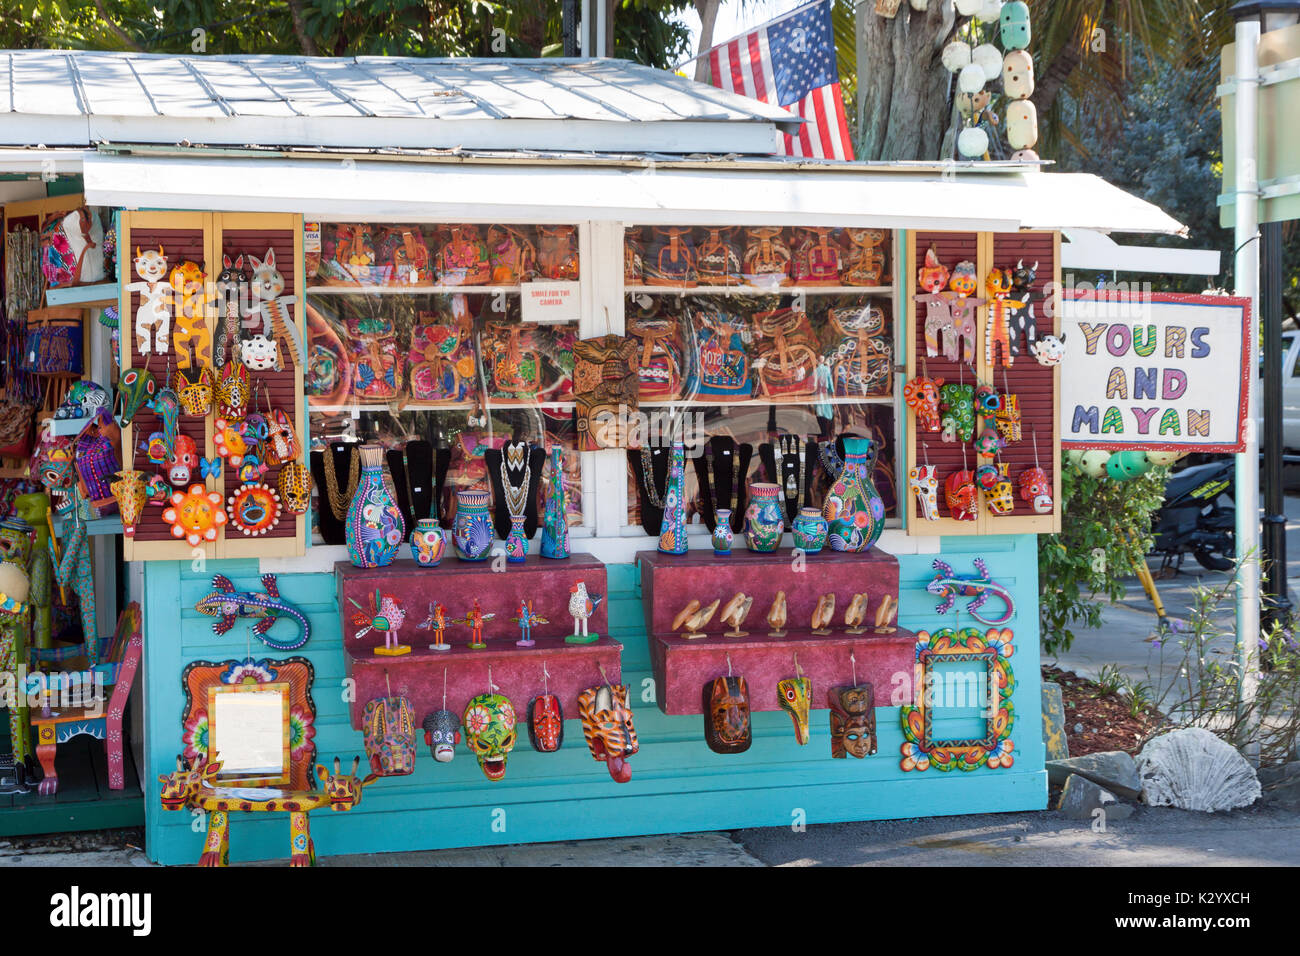 Le vôtre et mayas, une boutique à Key West, FL, vend des objets artisanaux importés d'Amérique centrale à travers le commerce équitable, d'aider les gens à être économiquement indépendants. Banque D'Images